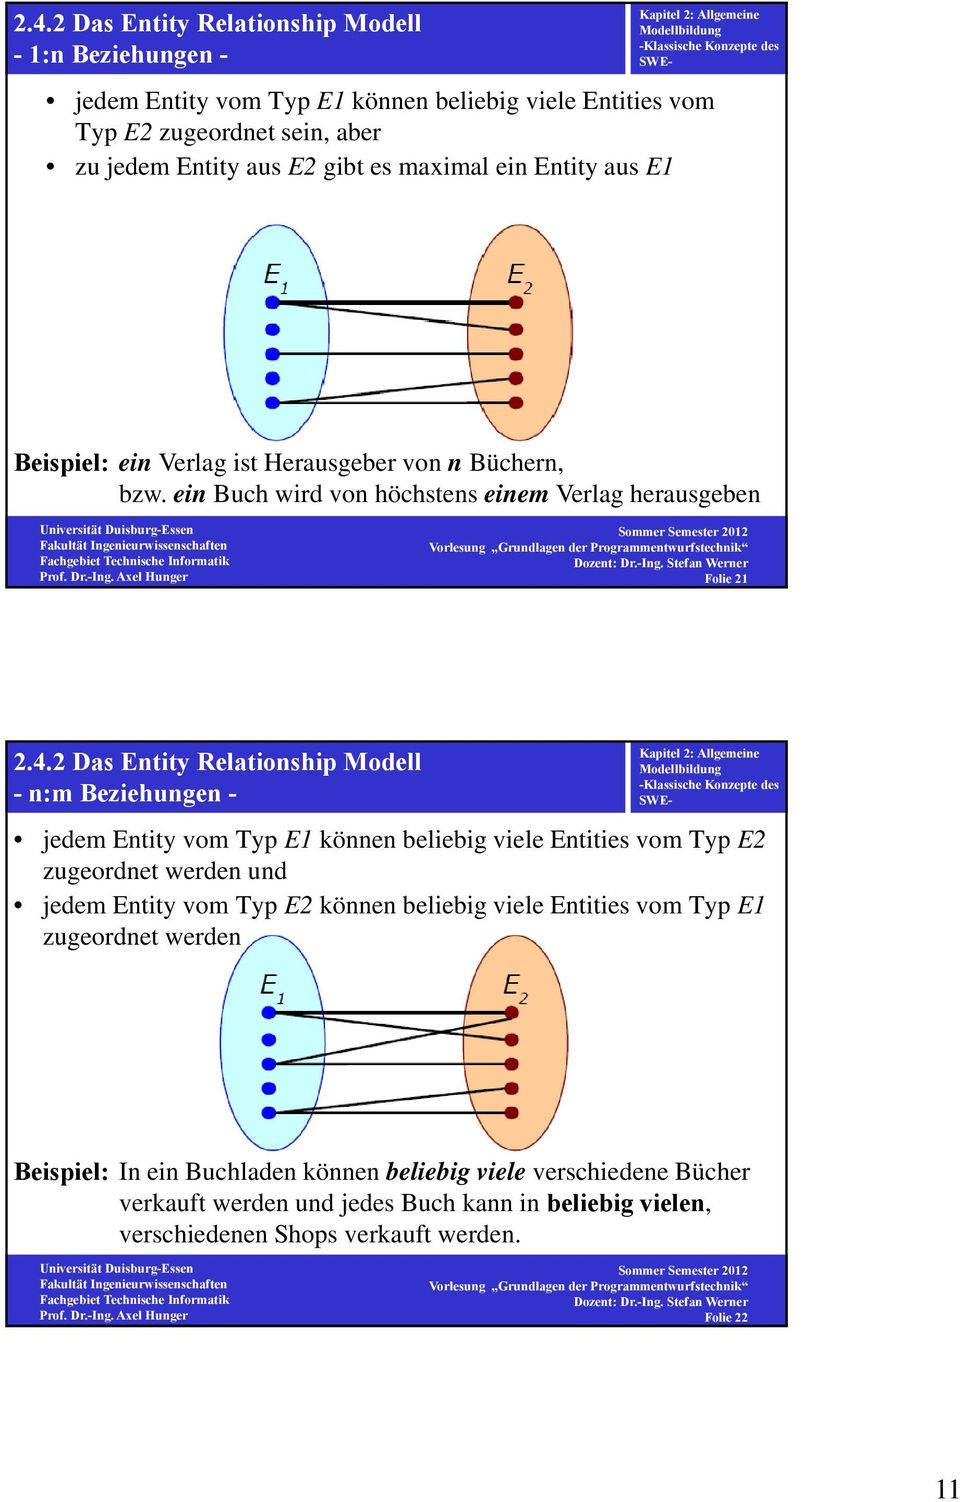 2 Das Entity Relationship Modell - n:m Beziehungen - jedem Entity vom Typ E1 können beliebig viele Entities vom Typ E2 zugeordnet werden und jedem Entity vom Typ E2 können beliebig